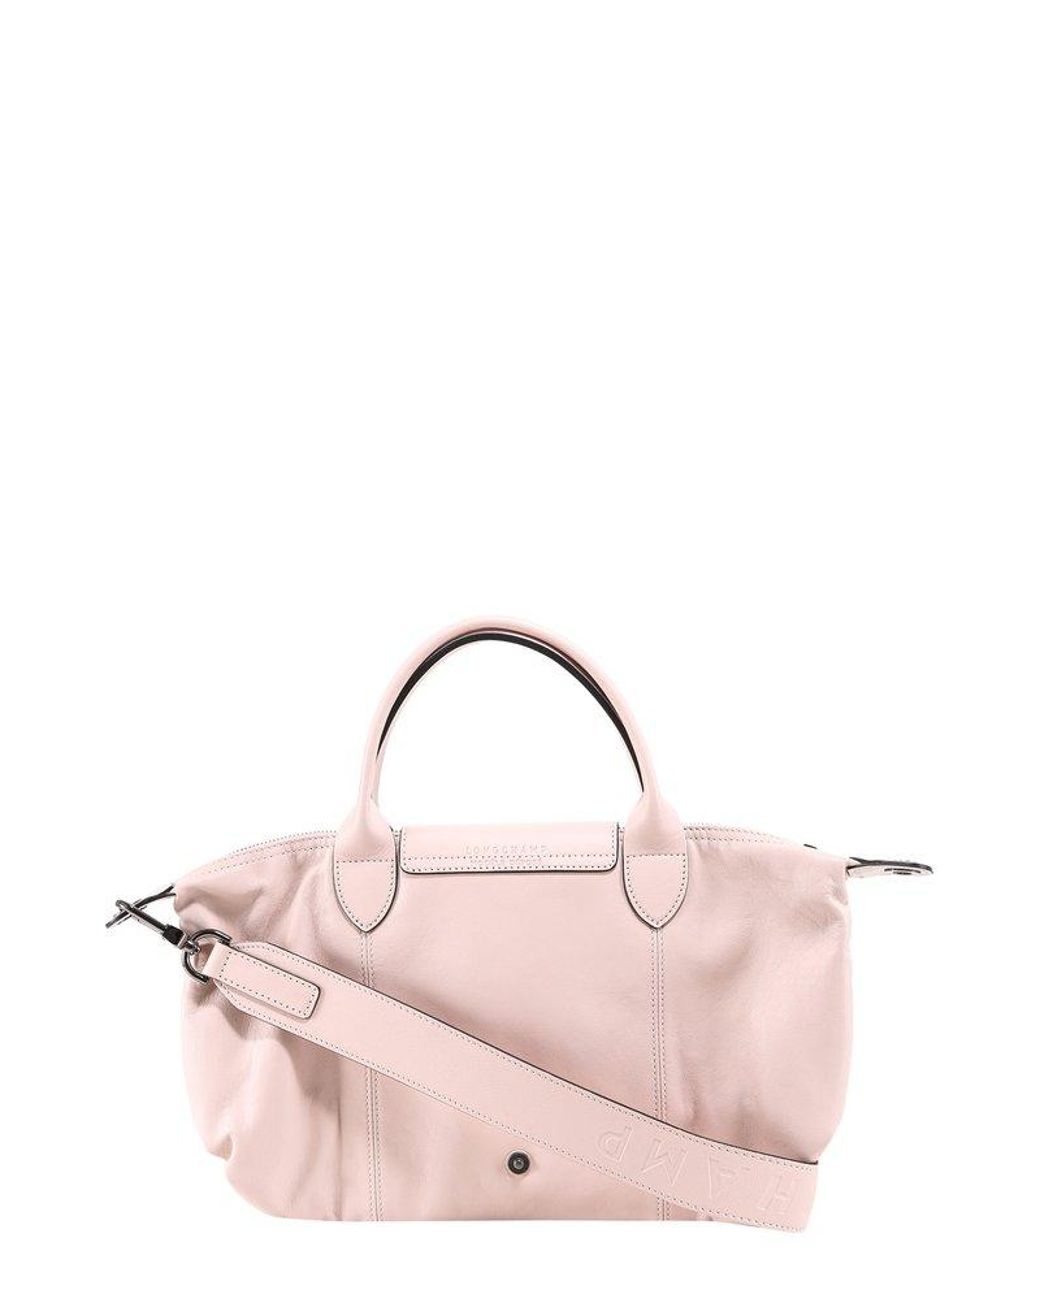 Longchamp Le Pliage Cuir Top Handle Bag on SALE